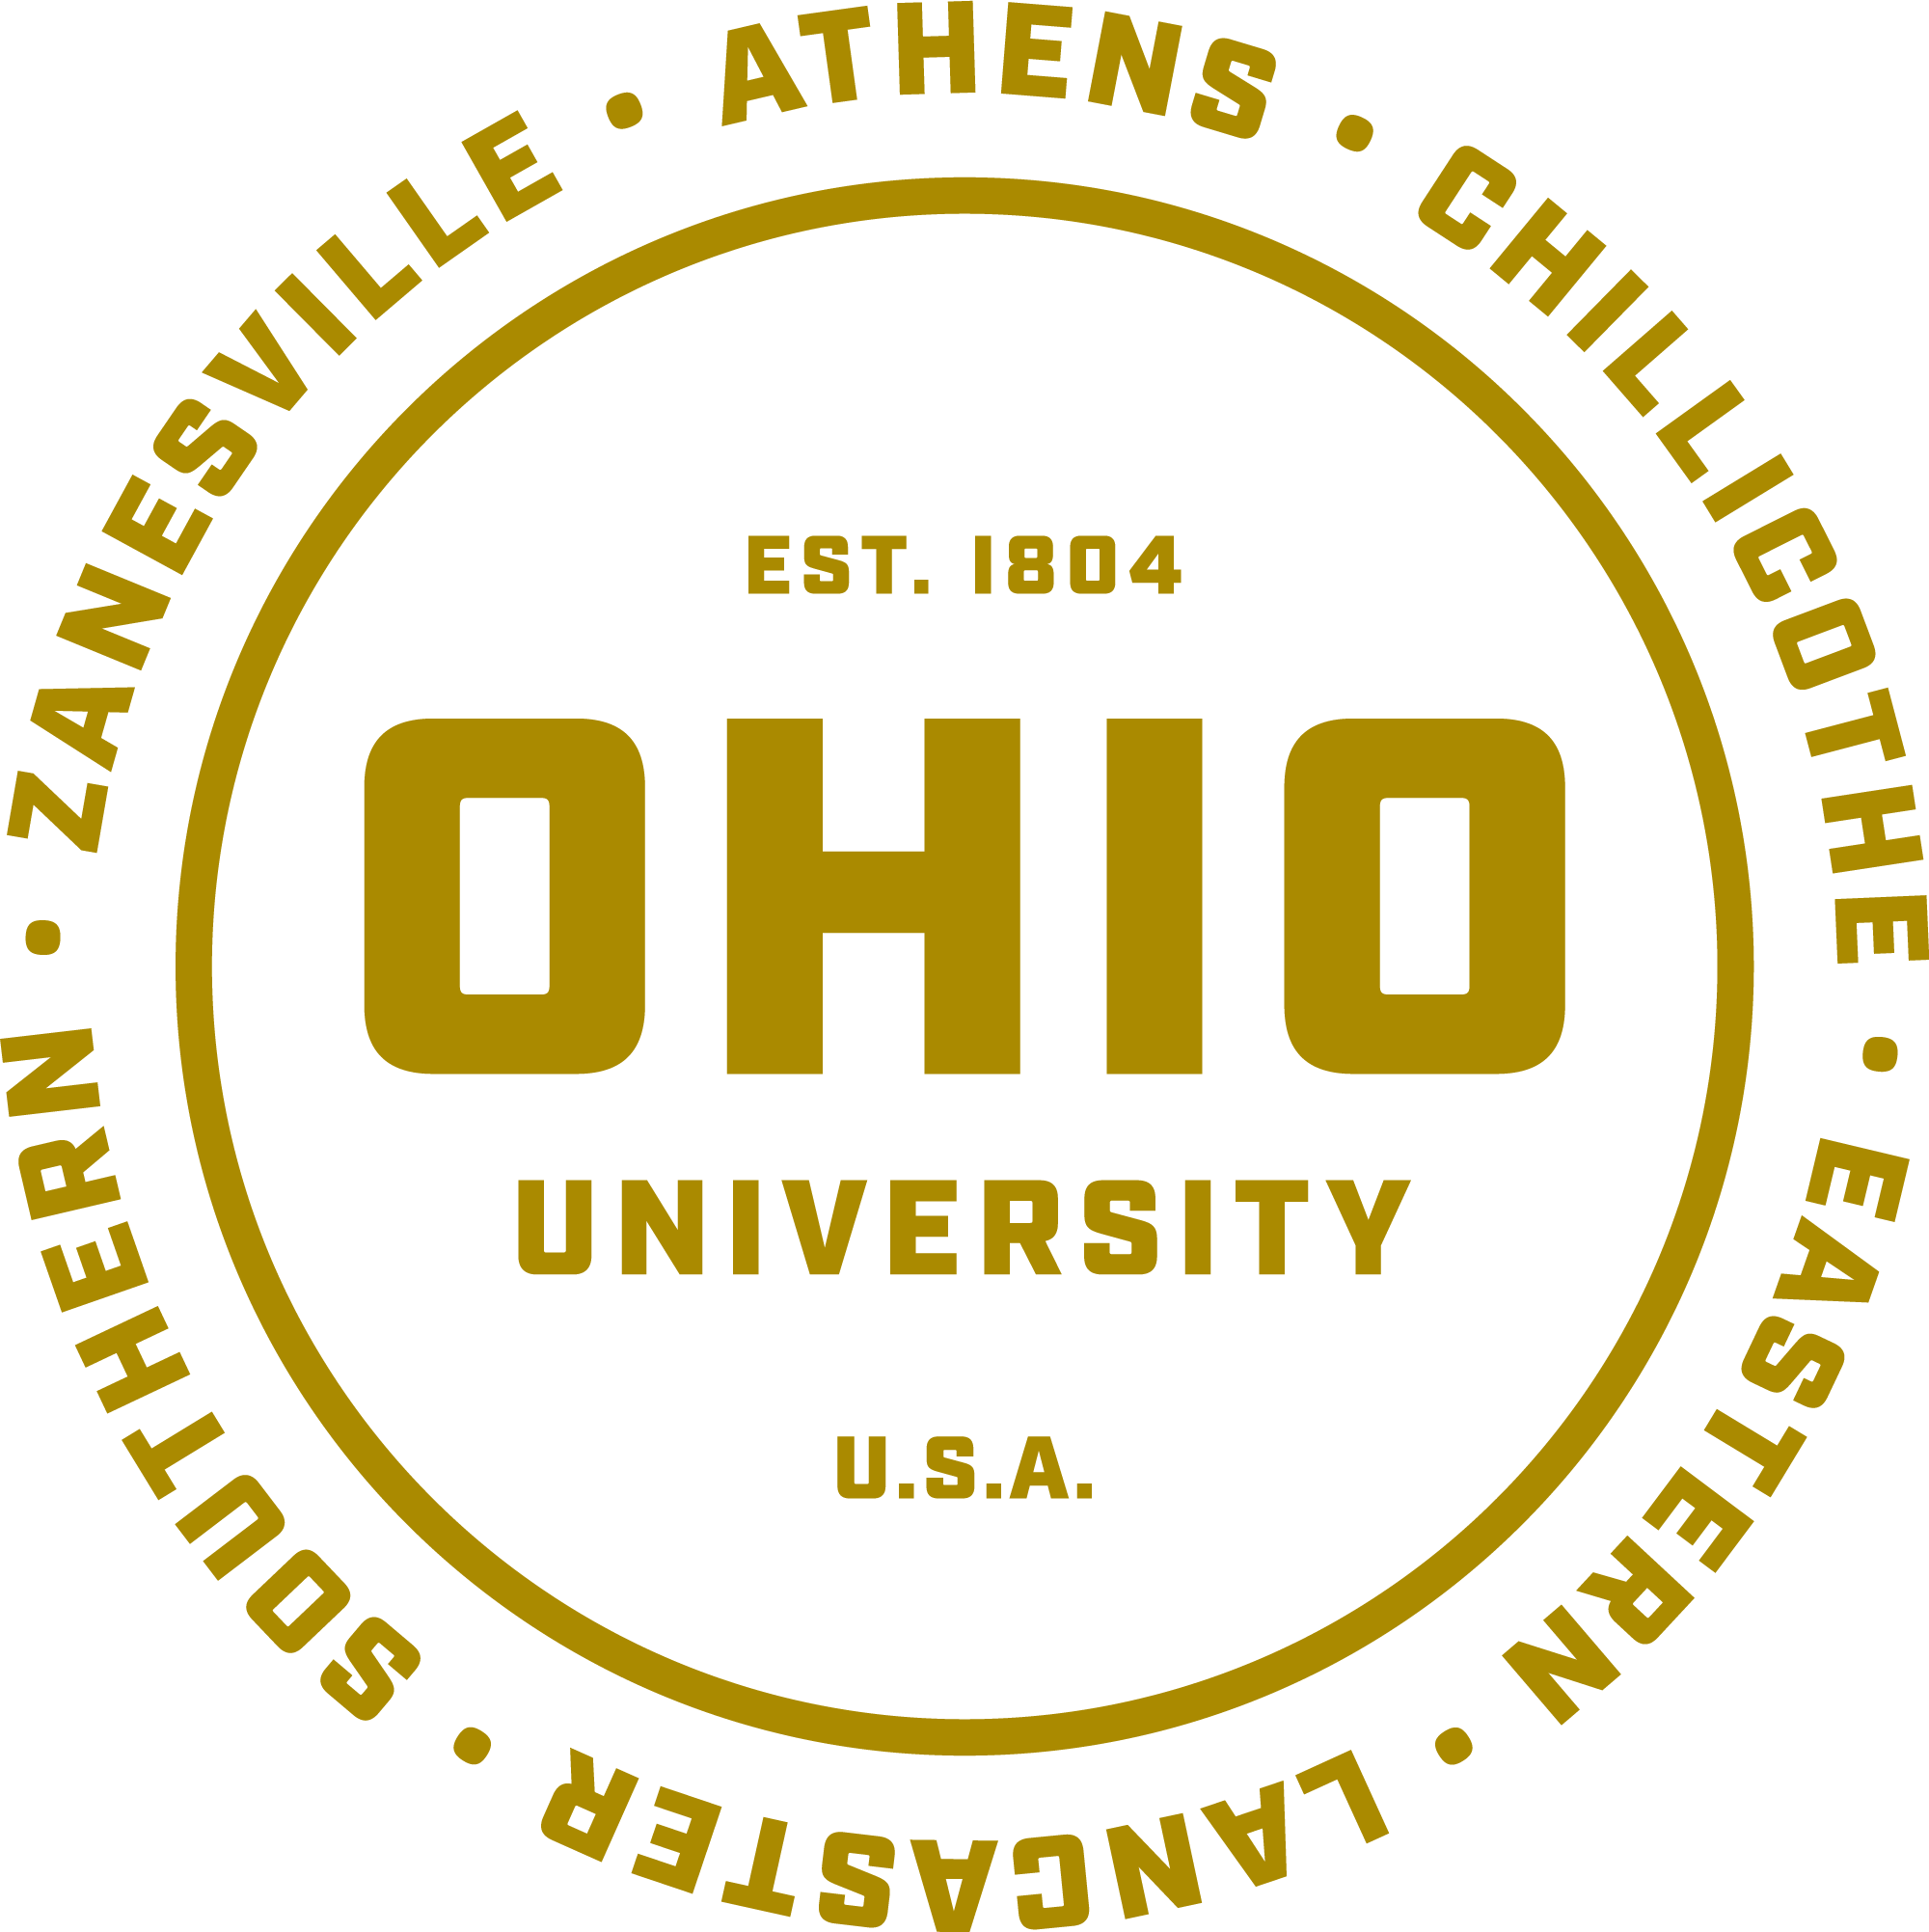 IT Services  Ohio University